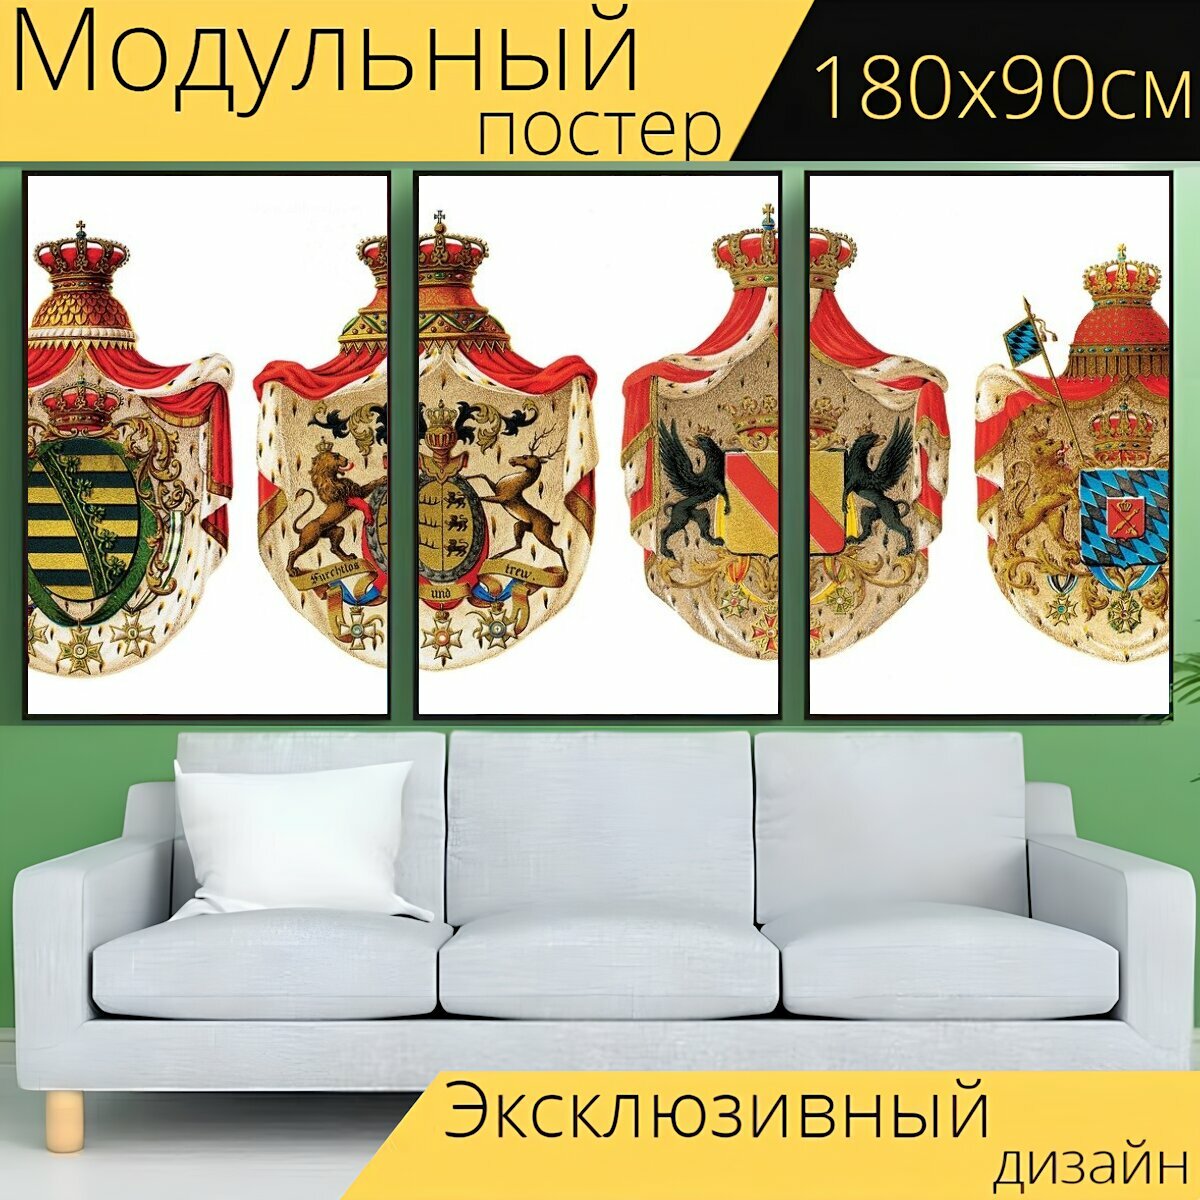 Модульный постер "Геральдика, гербы германии, германия" 180 x 90 см. для интерьера